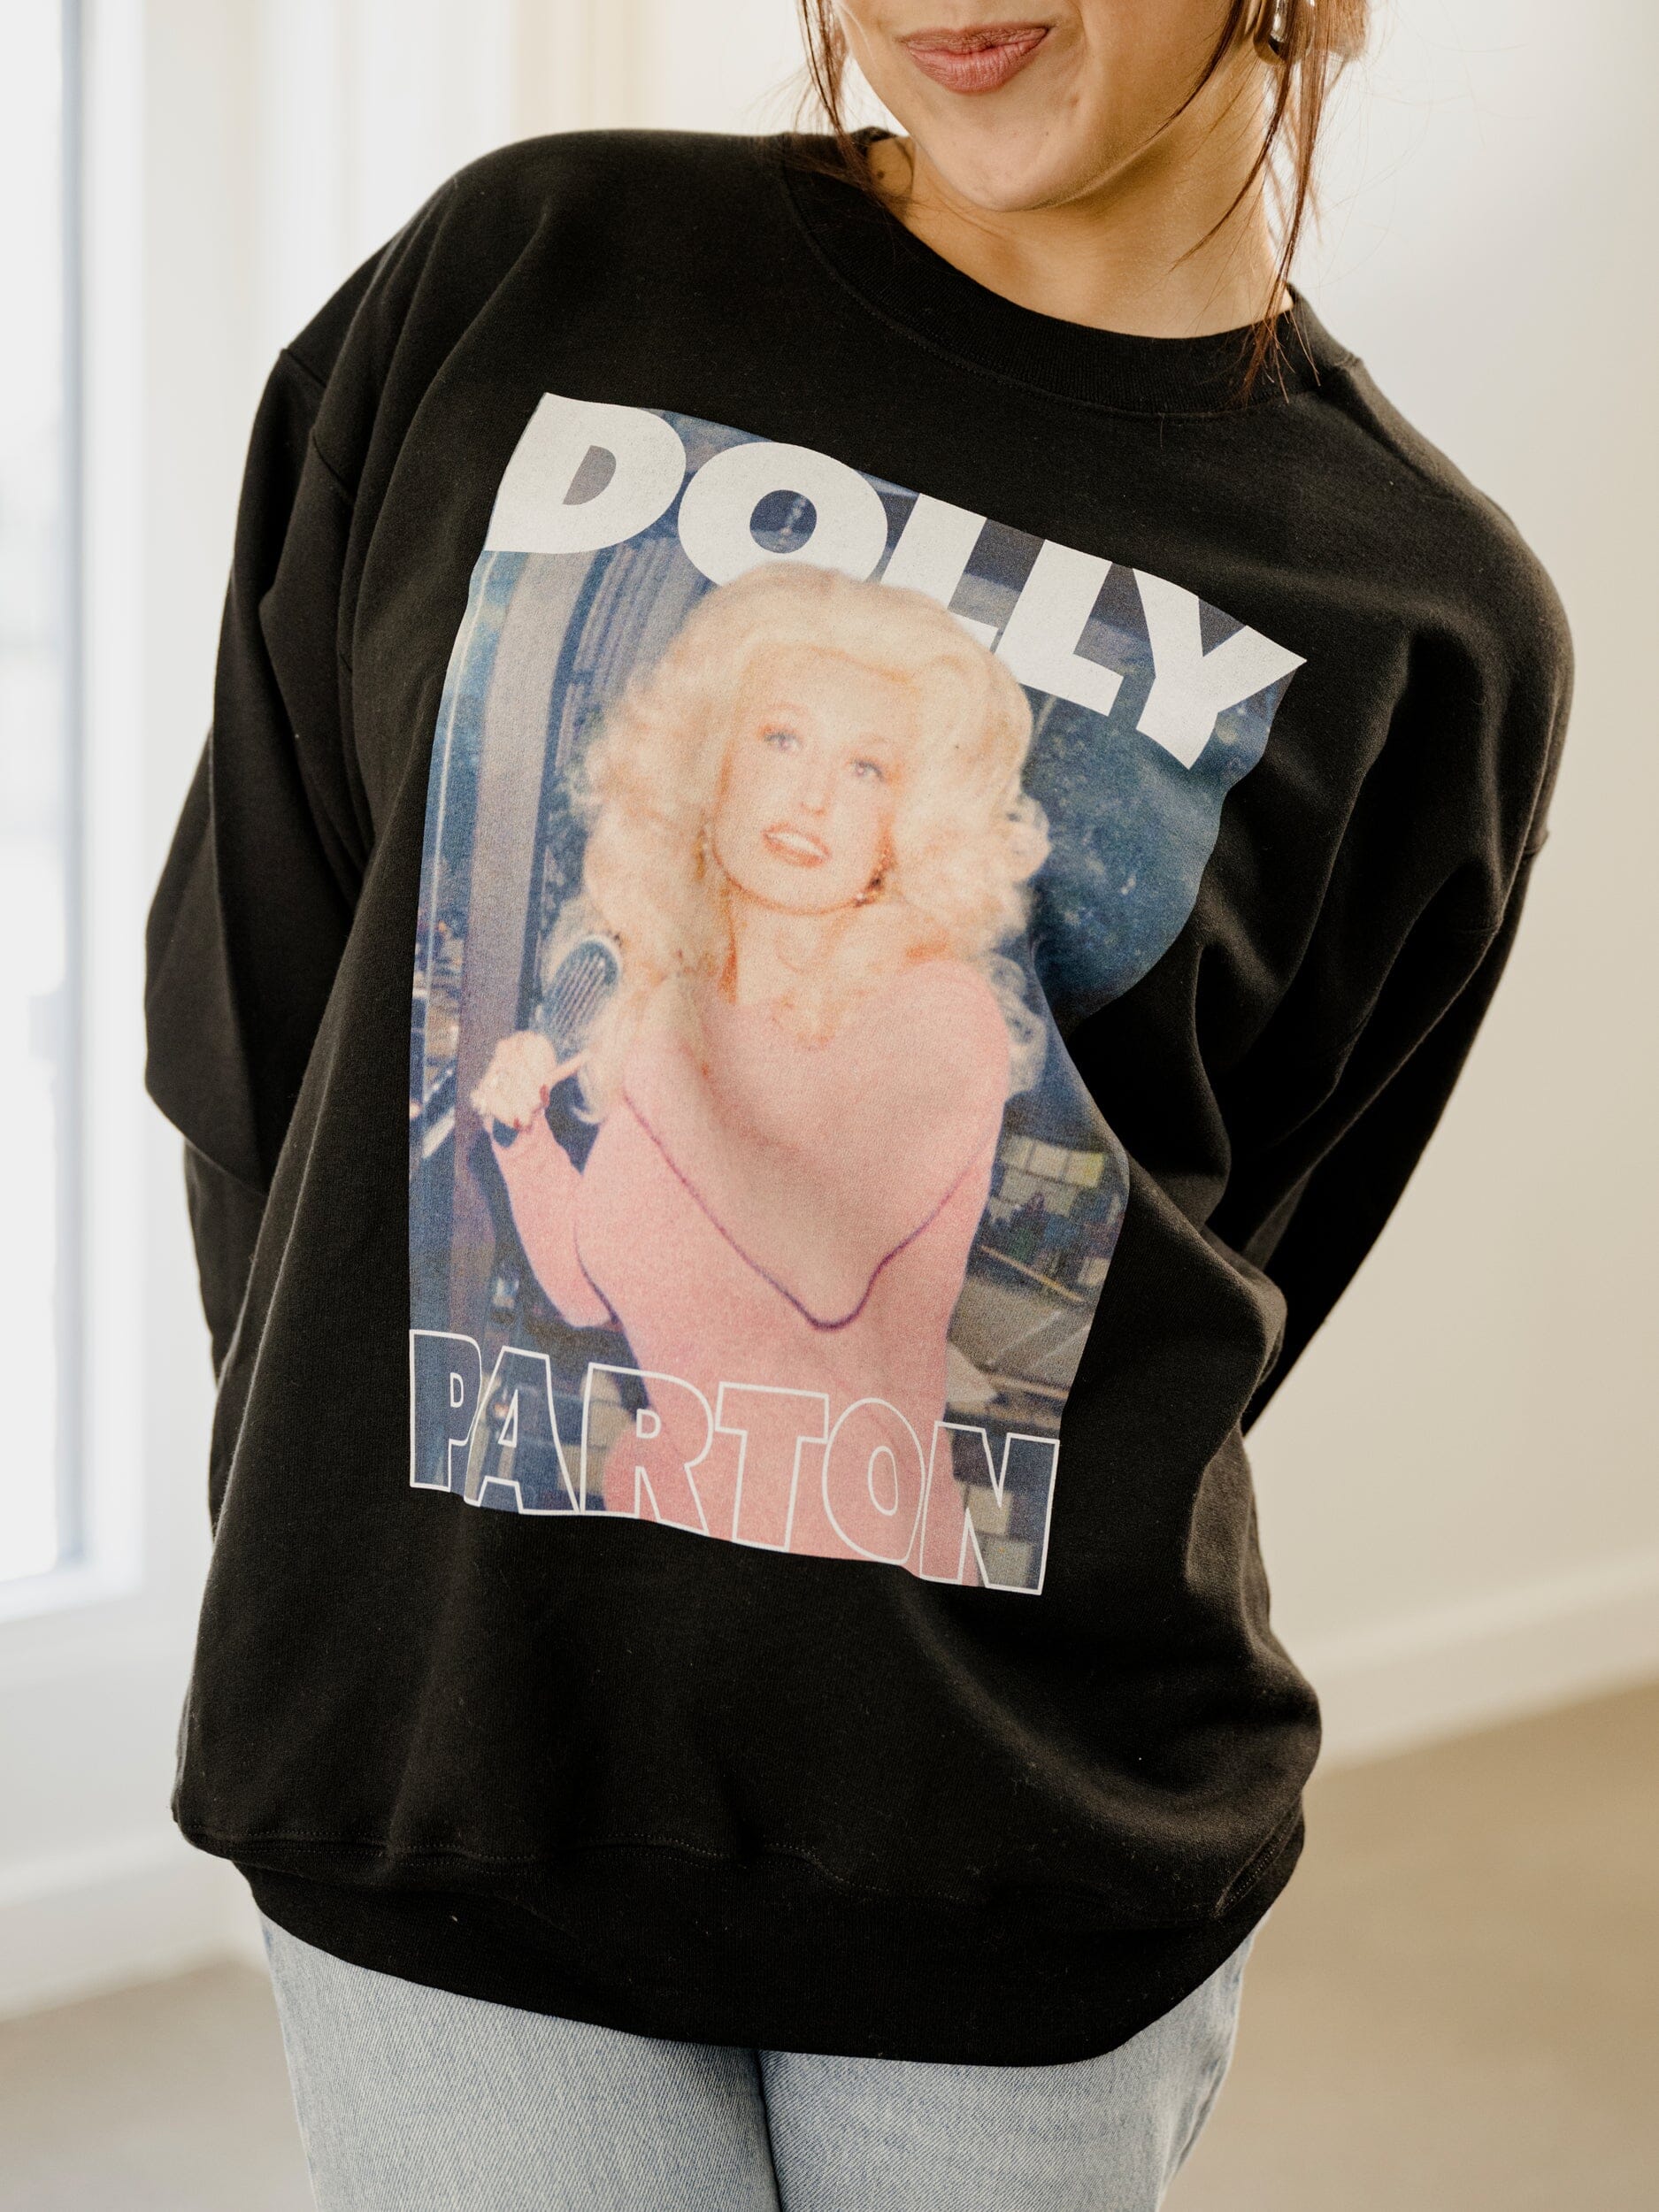 Dolly Parton in Pink Black Sweatshirt